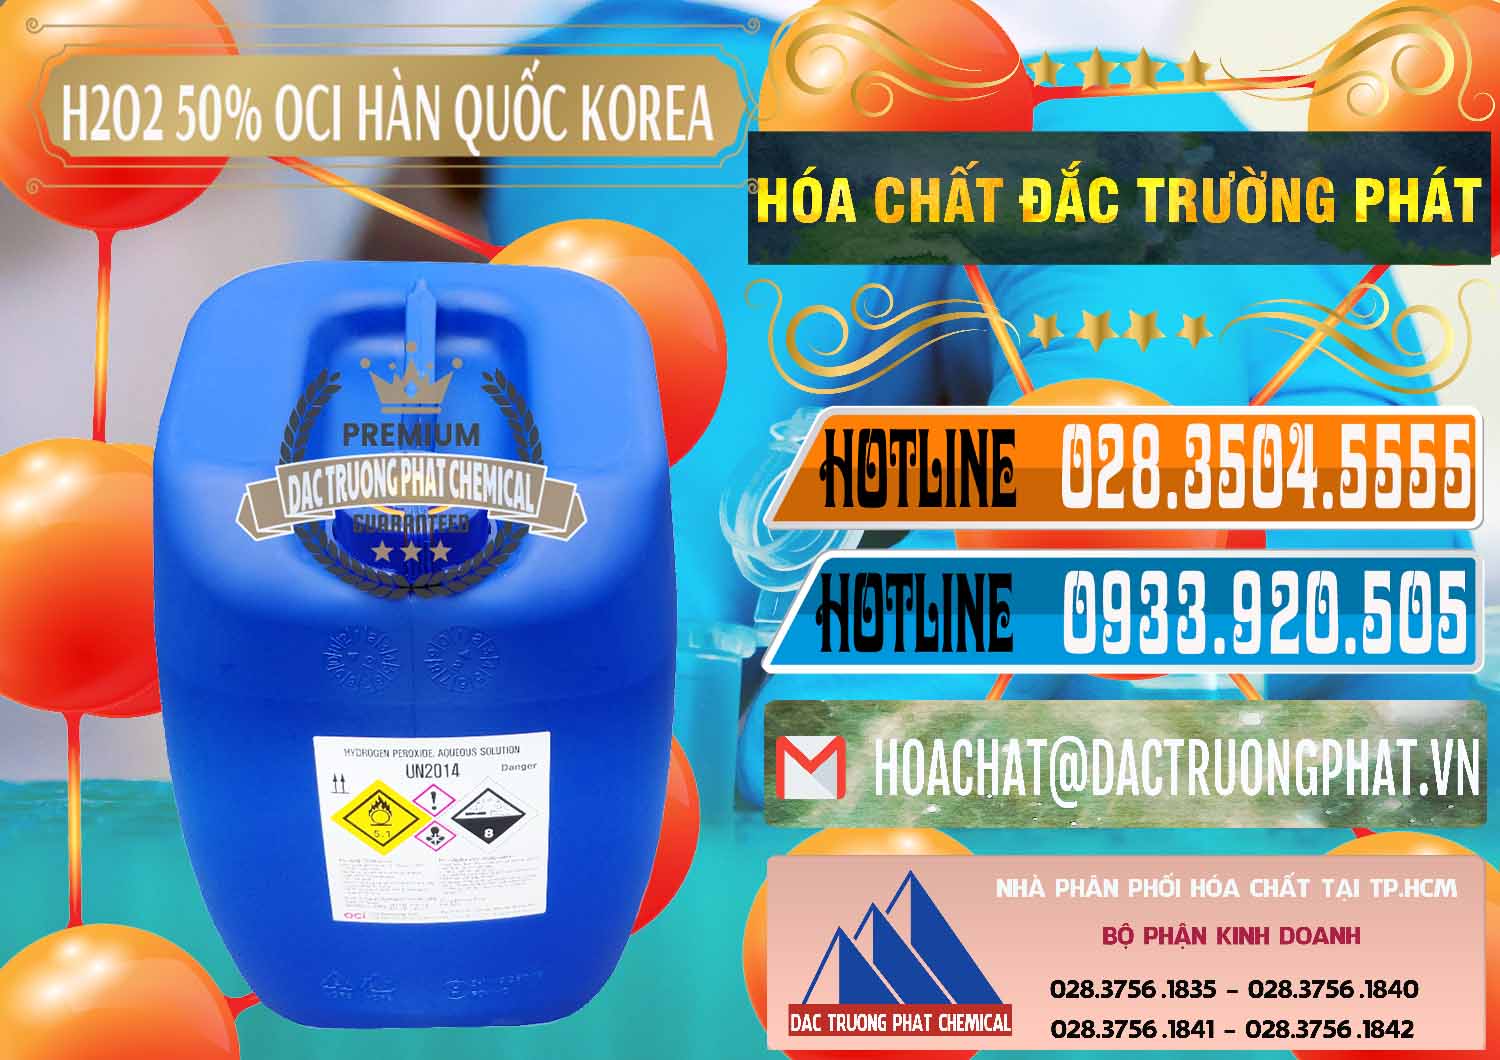 Chuyên bán _ cung cấp H2O2 - Hydrogen Peroxide 50% OCI Hàn Quốc Korea - 0075 - Cty cung ứng _ phân phối hóa chất tại TP.HCM - stmp.net